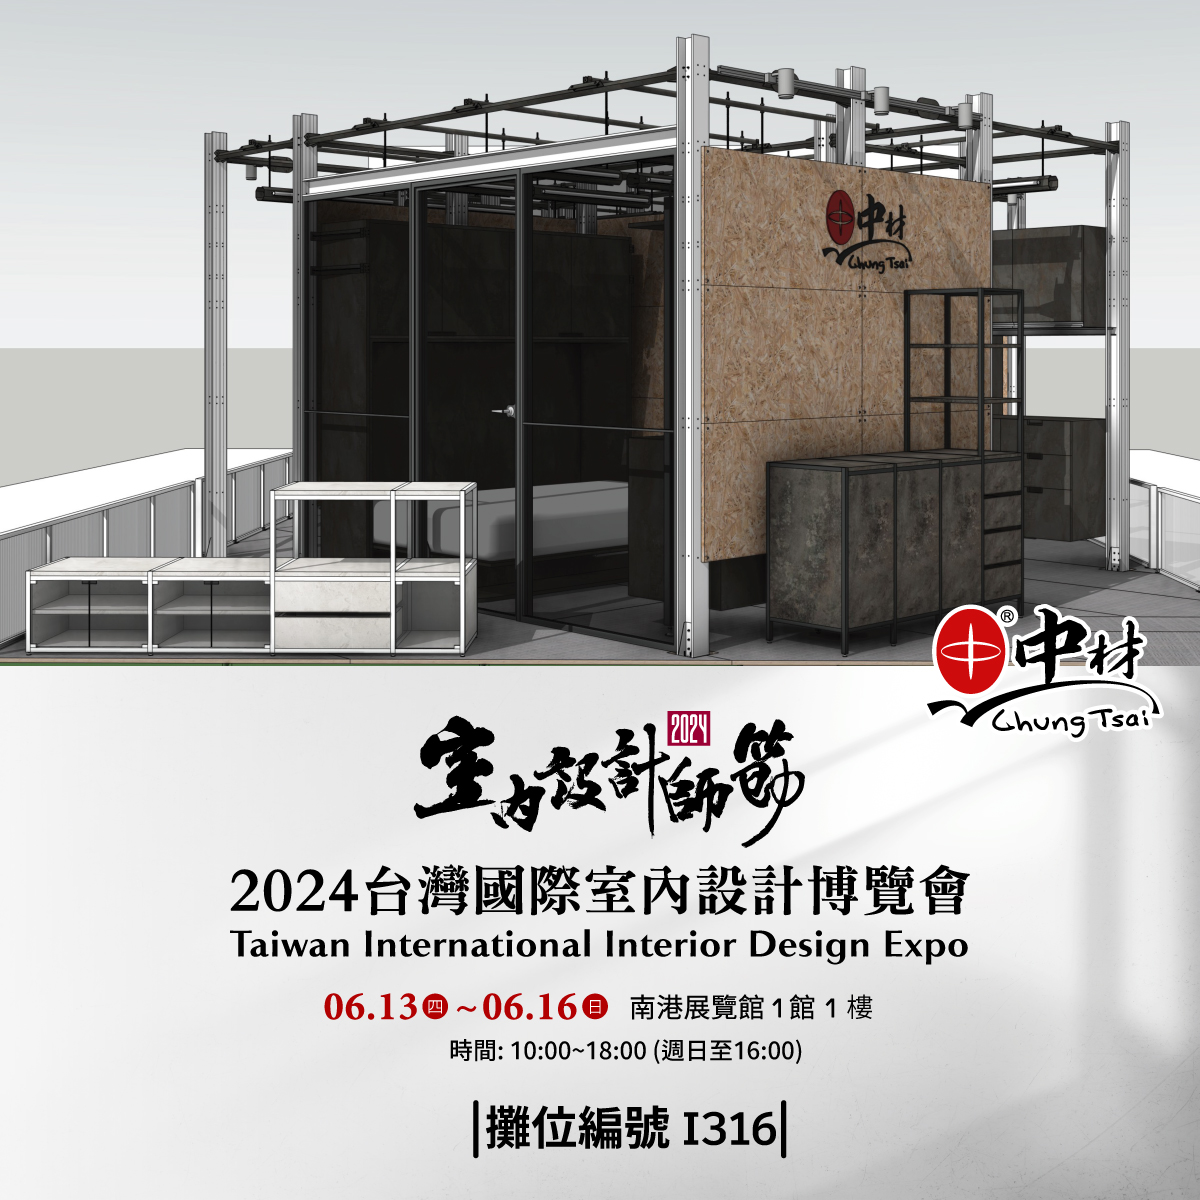 【展覽快報】2024-台灣國際室內設計博覽會   佈展第2天  怎麼到達攤位 搶先看